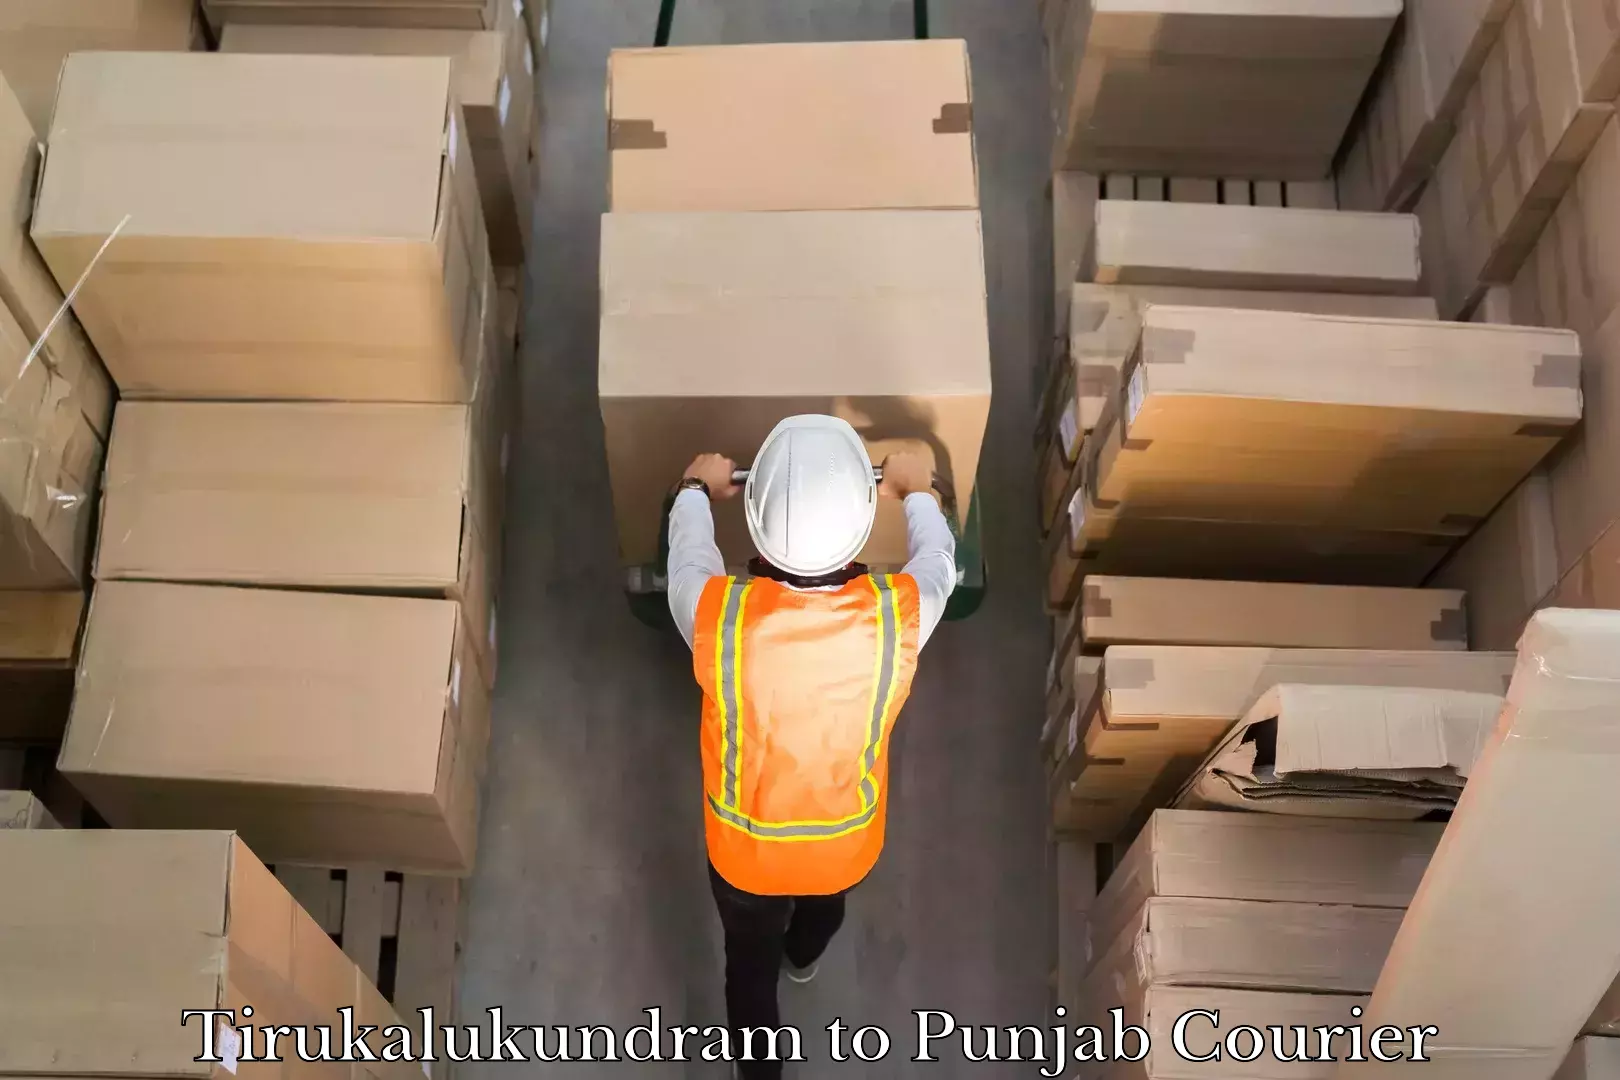 24/7 courier service Tirukalukundram to Punjab